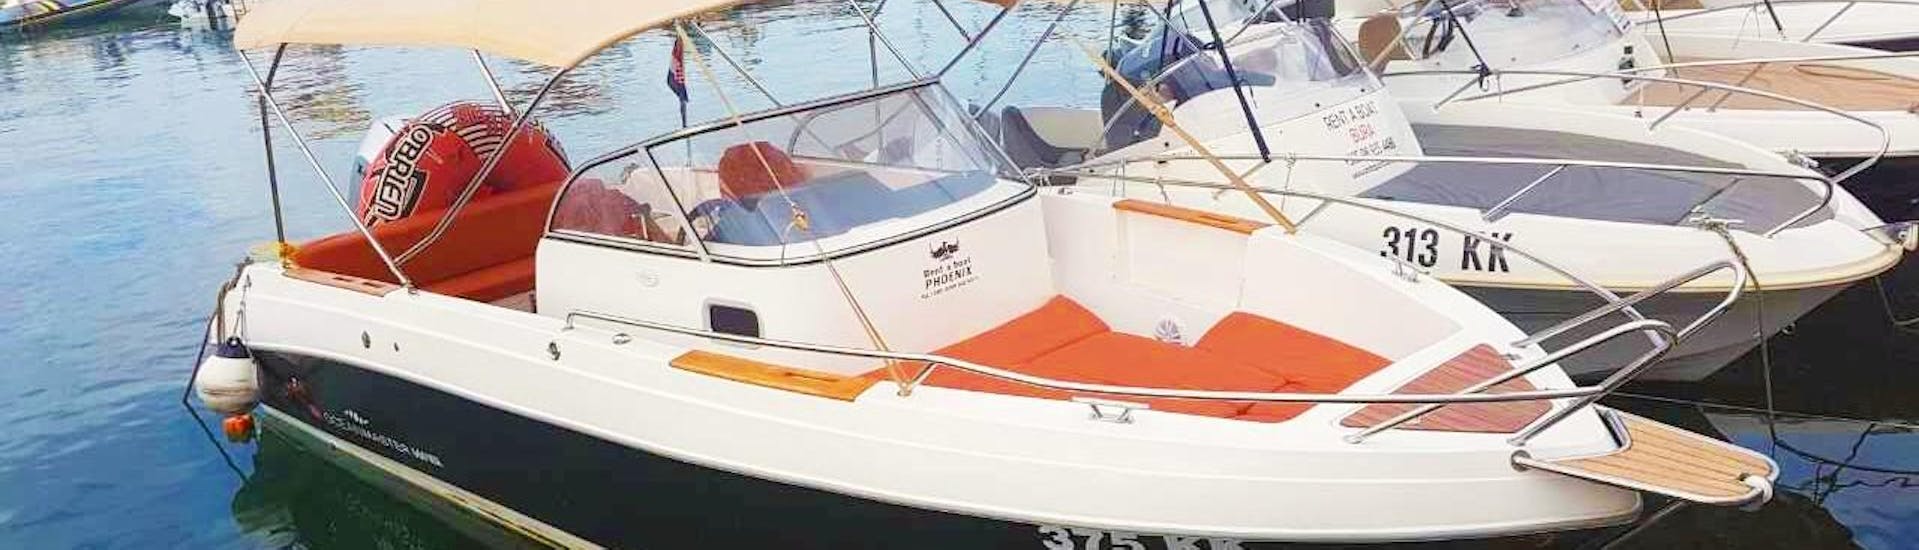 Bateau disponible pour une location de bateau à moteur pour 8 personnes à Krk avec notre partenaire Rent a Boat Phoenix.